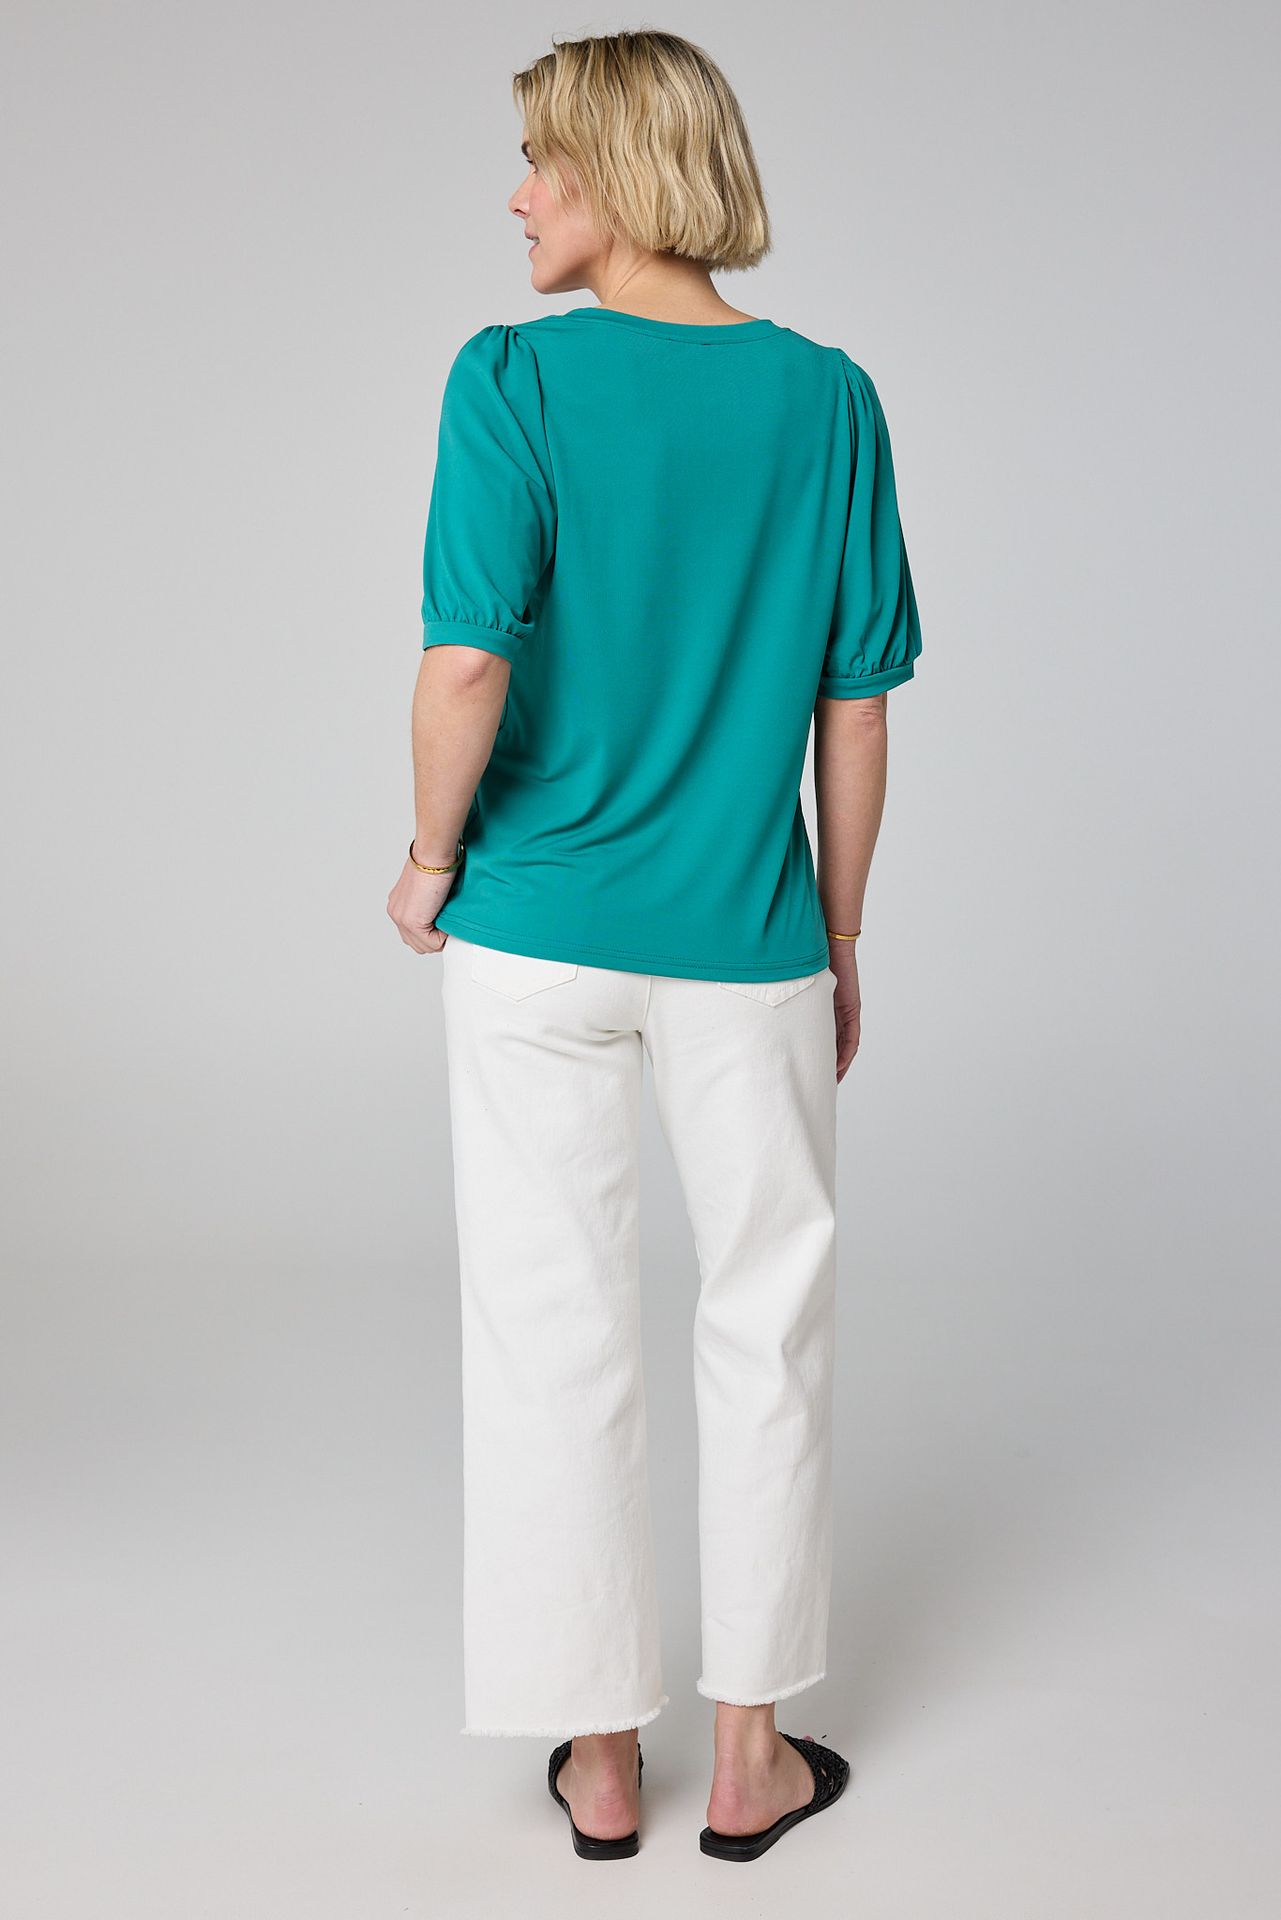 Norah Groen shirt met pofmouwen jade 212851-574